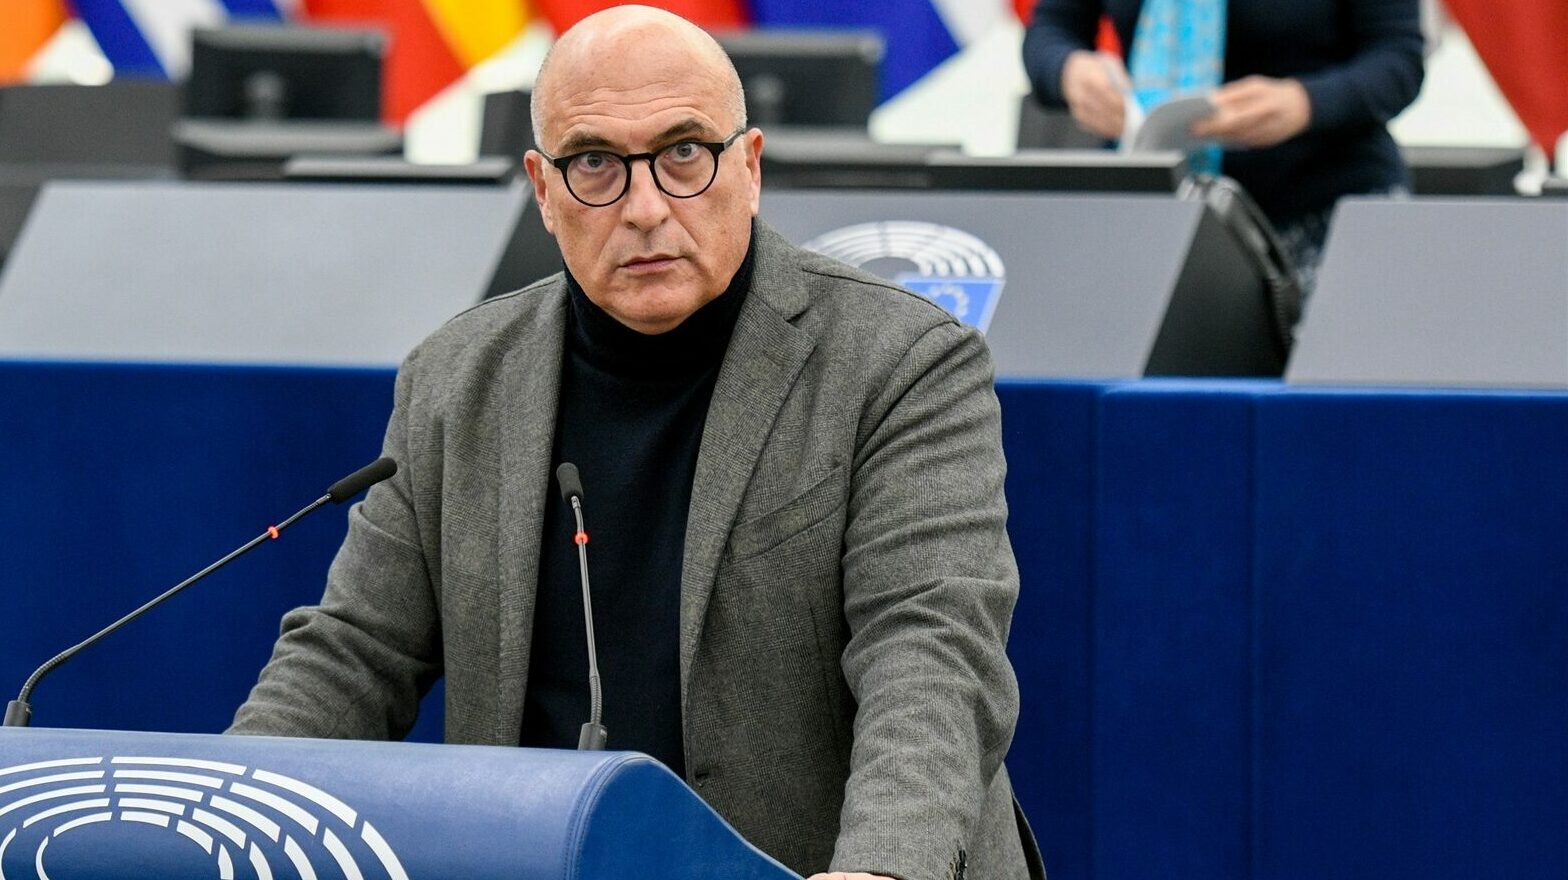 El eurodiputado italiano señalado por la trama corrupta niega las acusaciones y descarta invocar su inmunidad